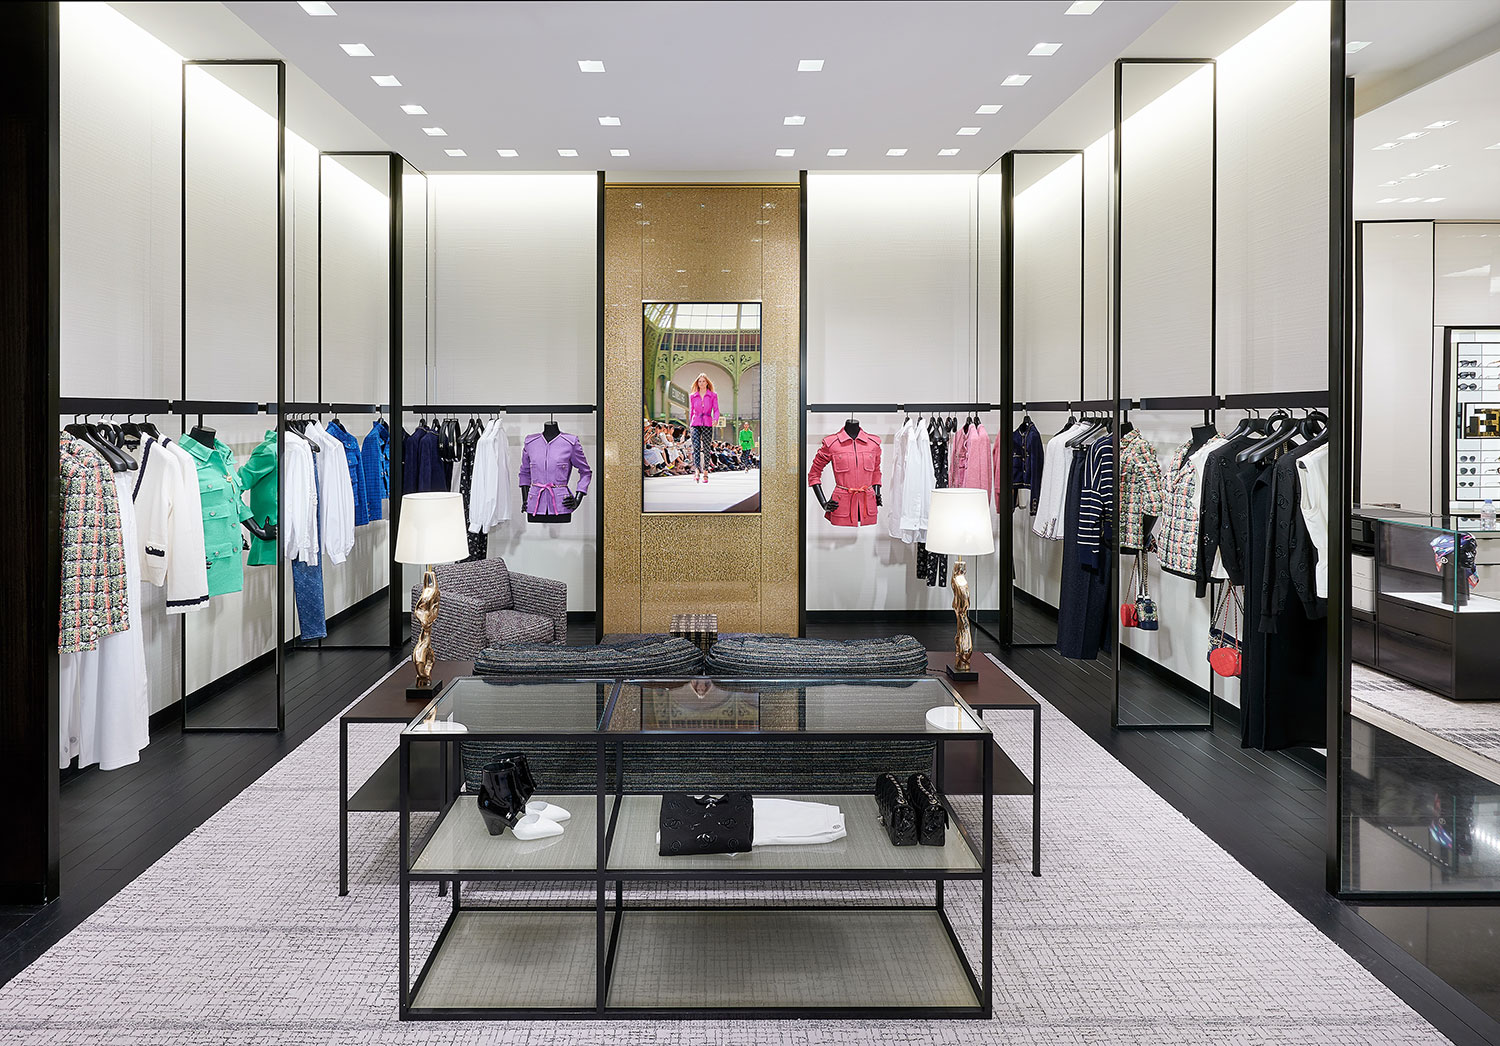 Chanel mở cửa hàng boutique thứ hai tại Paris  Charles de Gaulle   StyleRepublikcom  Thời Trang sáng tạo và kinh doanh